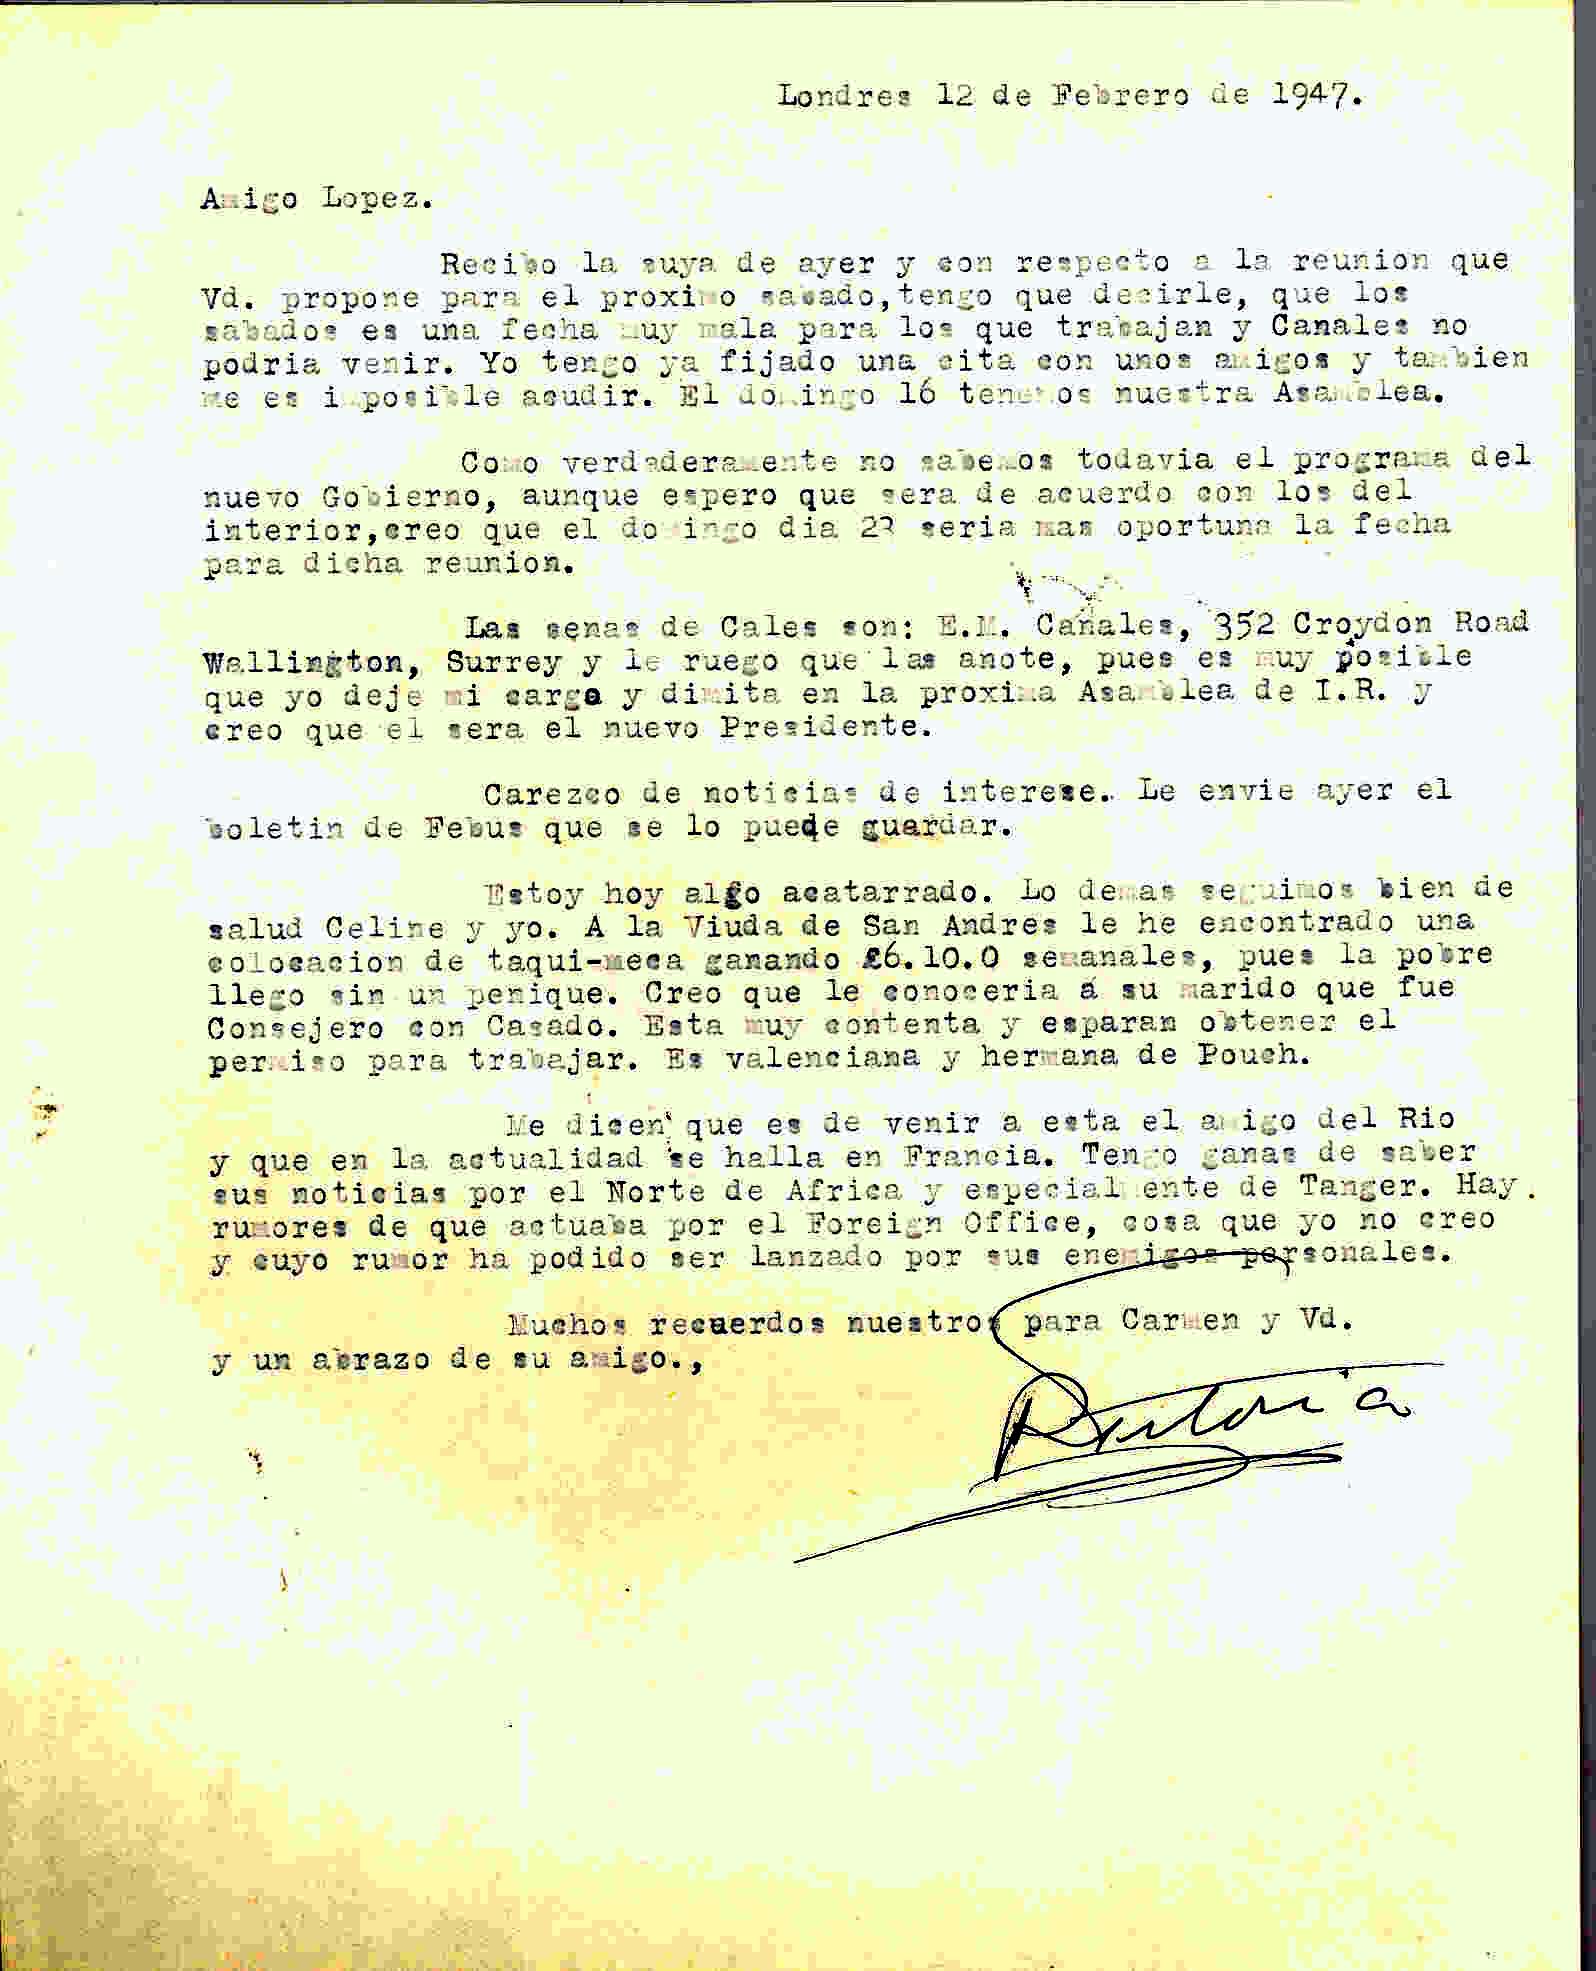 Carta de Roque Victoria contestando que no podrá ir a la reunión de la ANFD por tener otra de Izquierda Republicana ese mismo día.